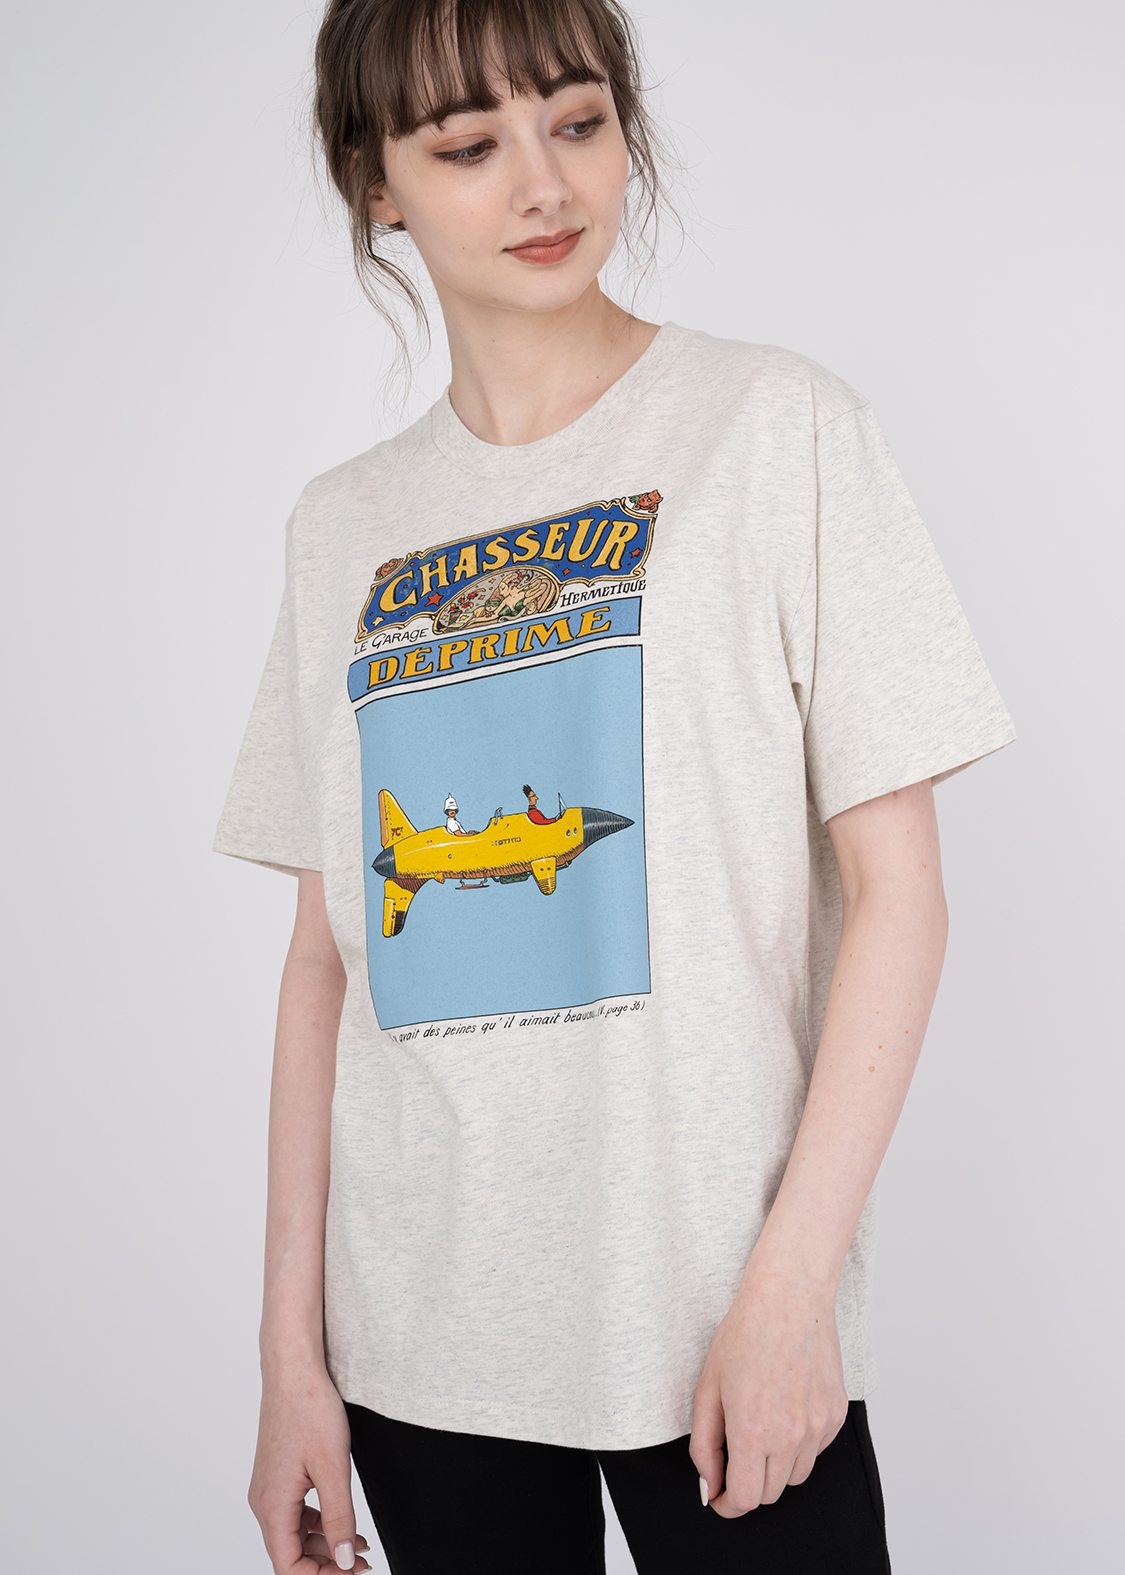 21,175円90s MOEBIUS メビウス STARWATCHER Tシャツ ジャンジロー